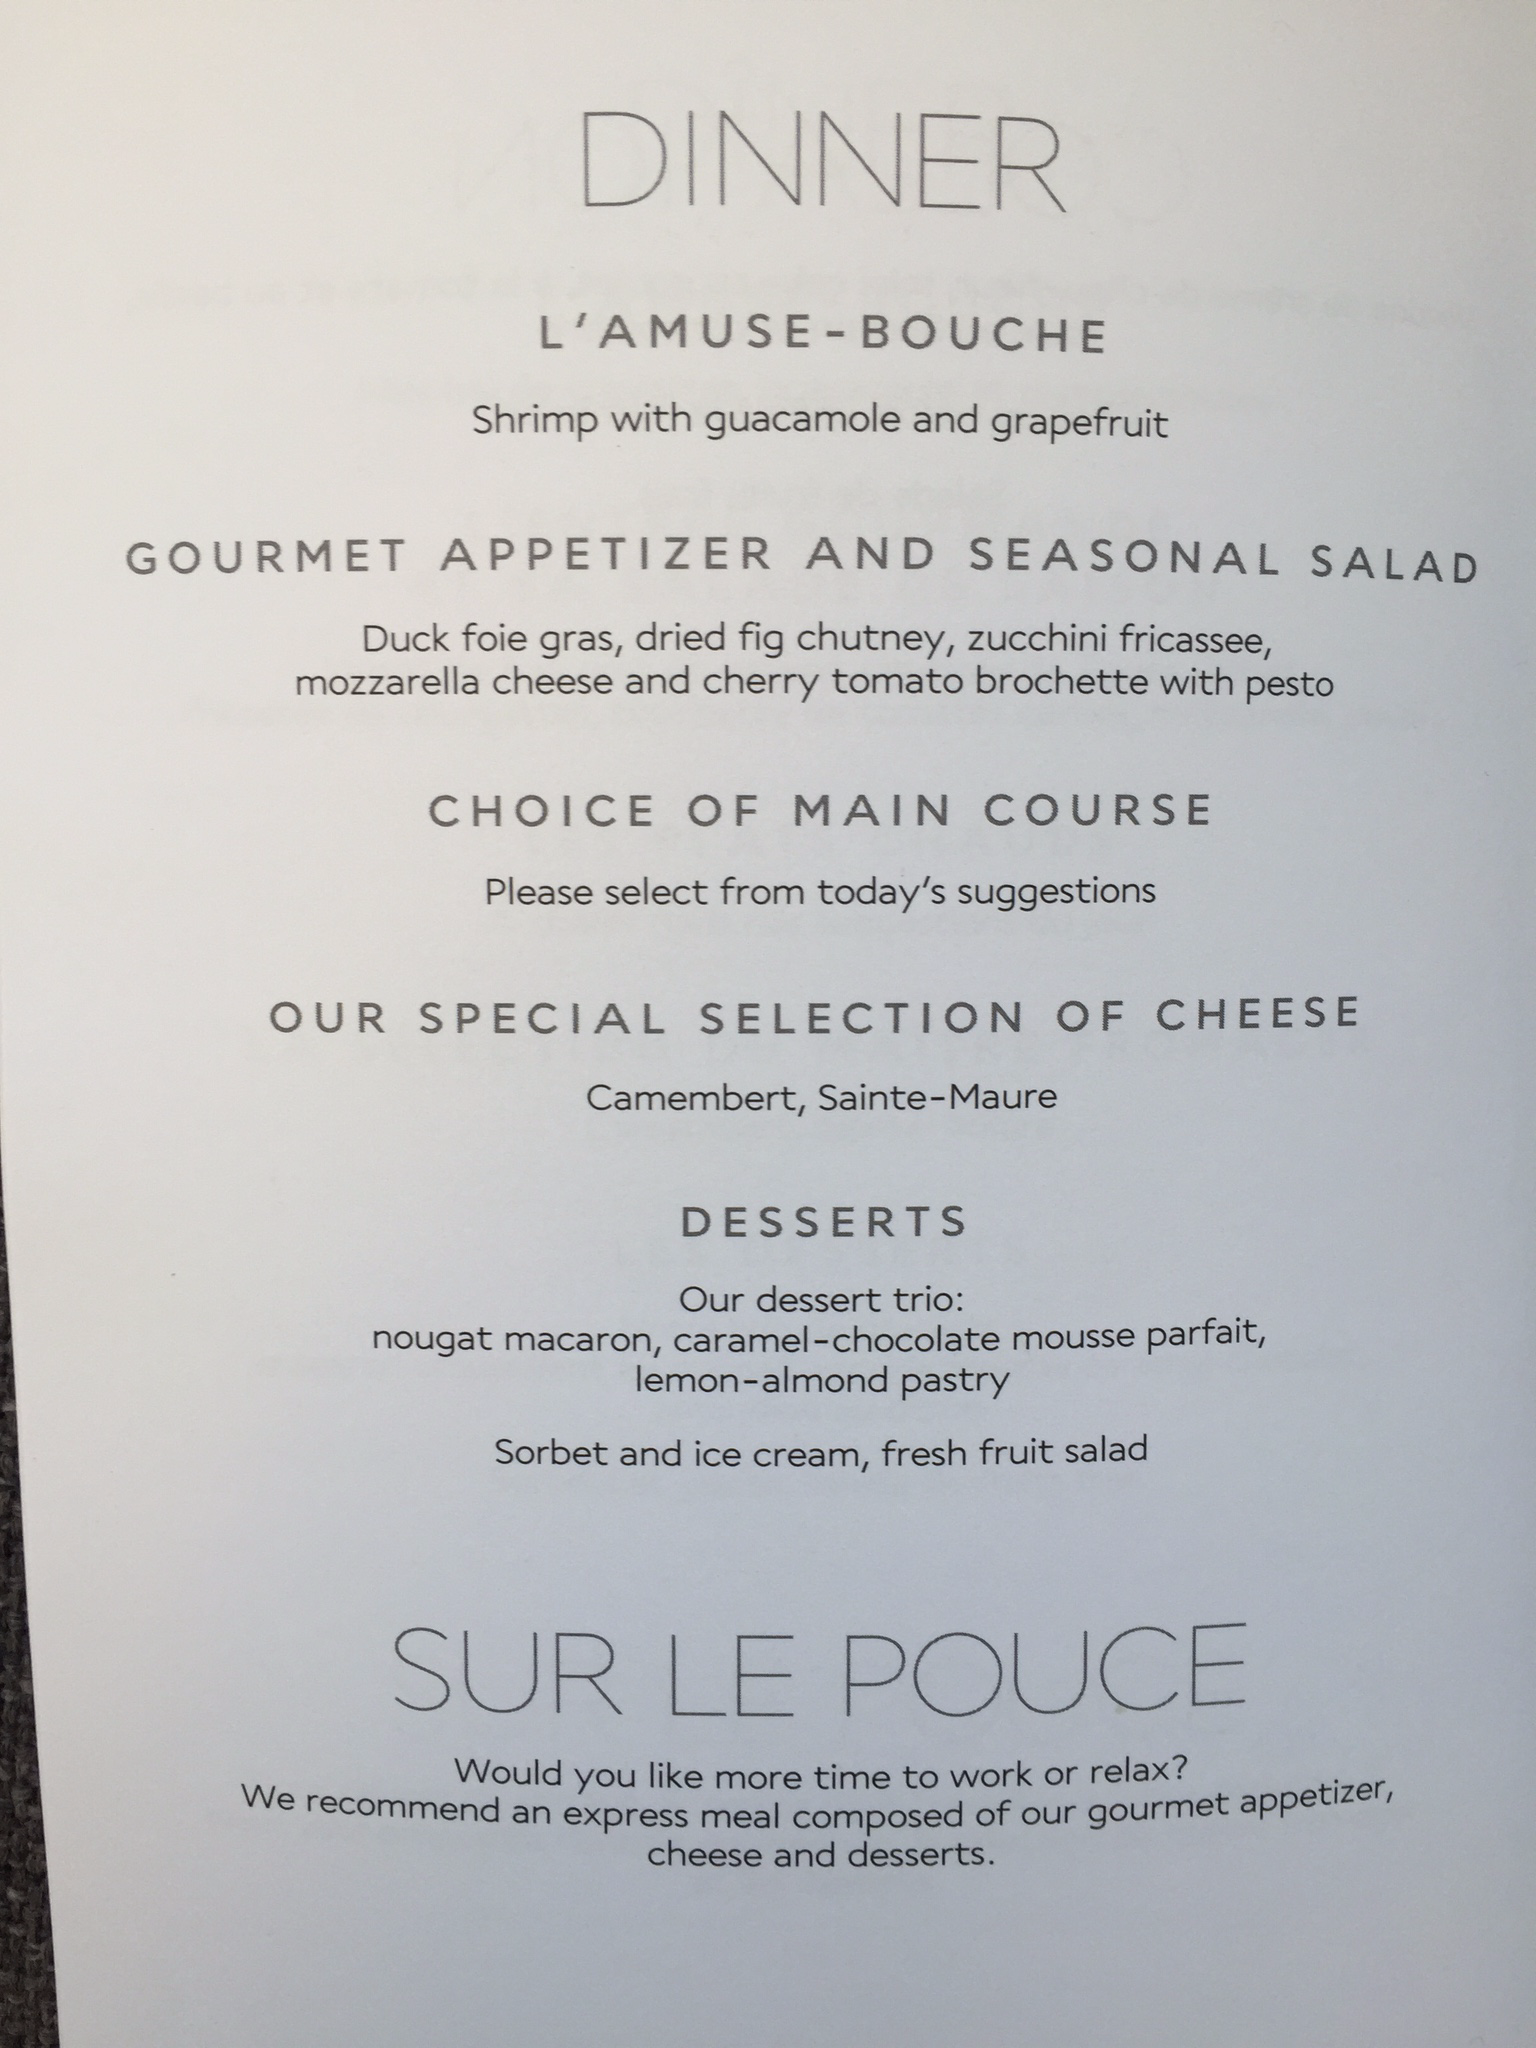 Air France business class dinner menu